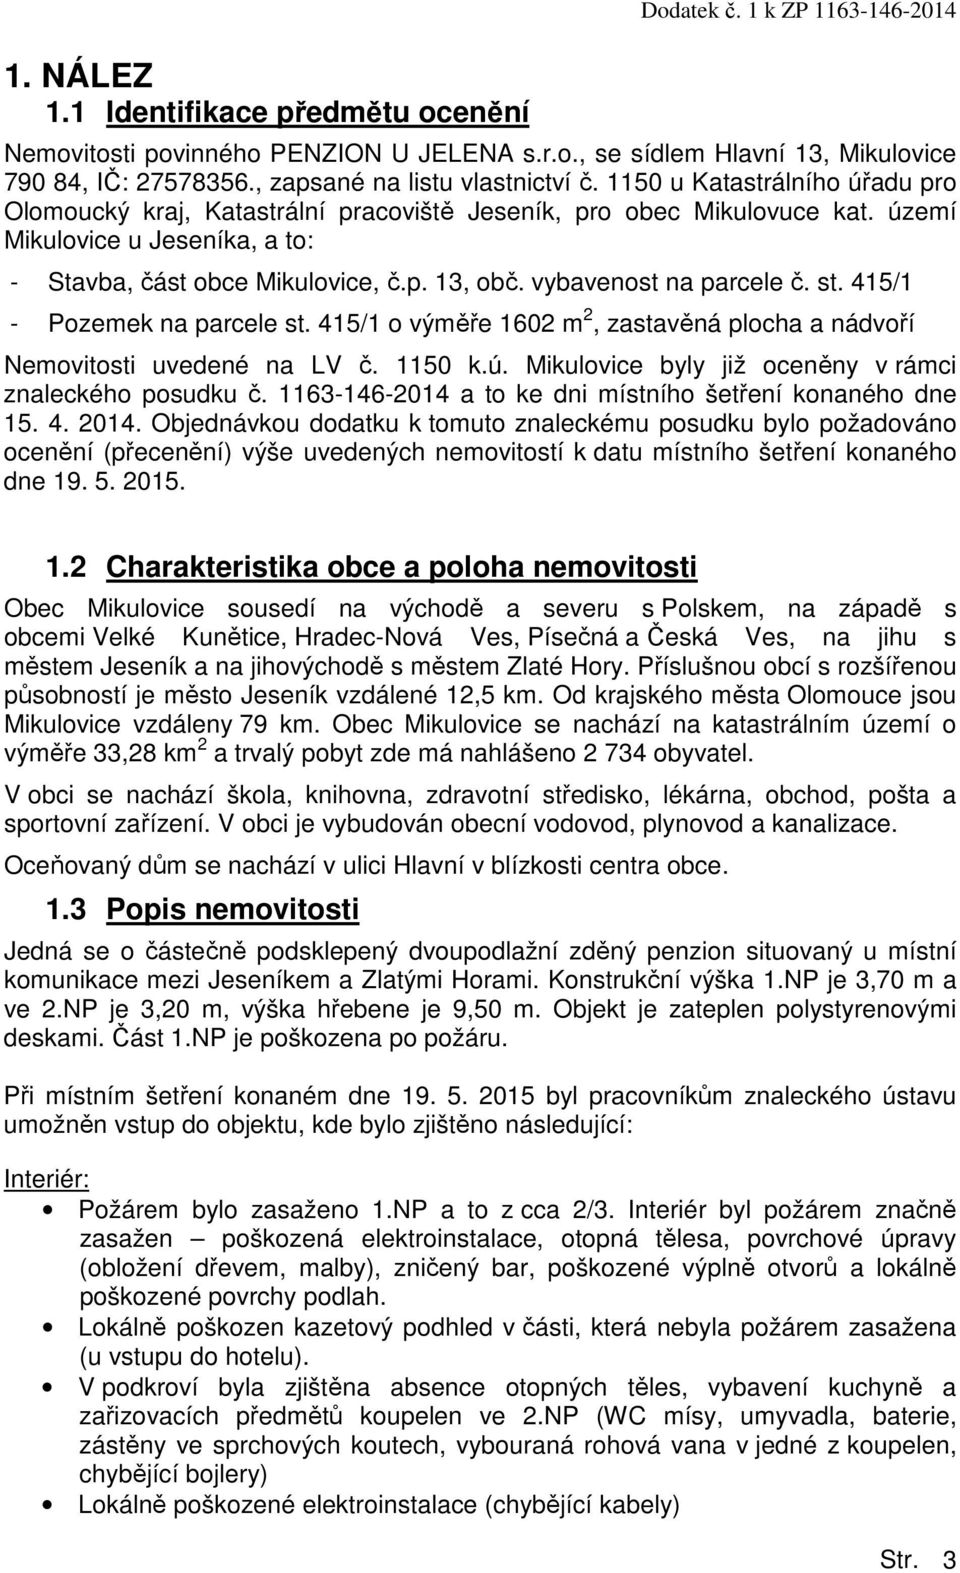 území Mikulovice u Jeseníka, a to: - Stavba, část obce Mikulovice, č.p. 13, obč. vybavenost na parcele č. st. 415/1 - Pozemek na parcele st.